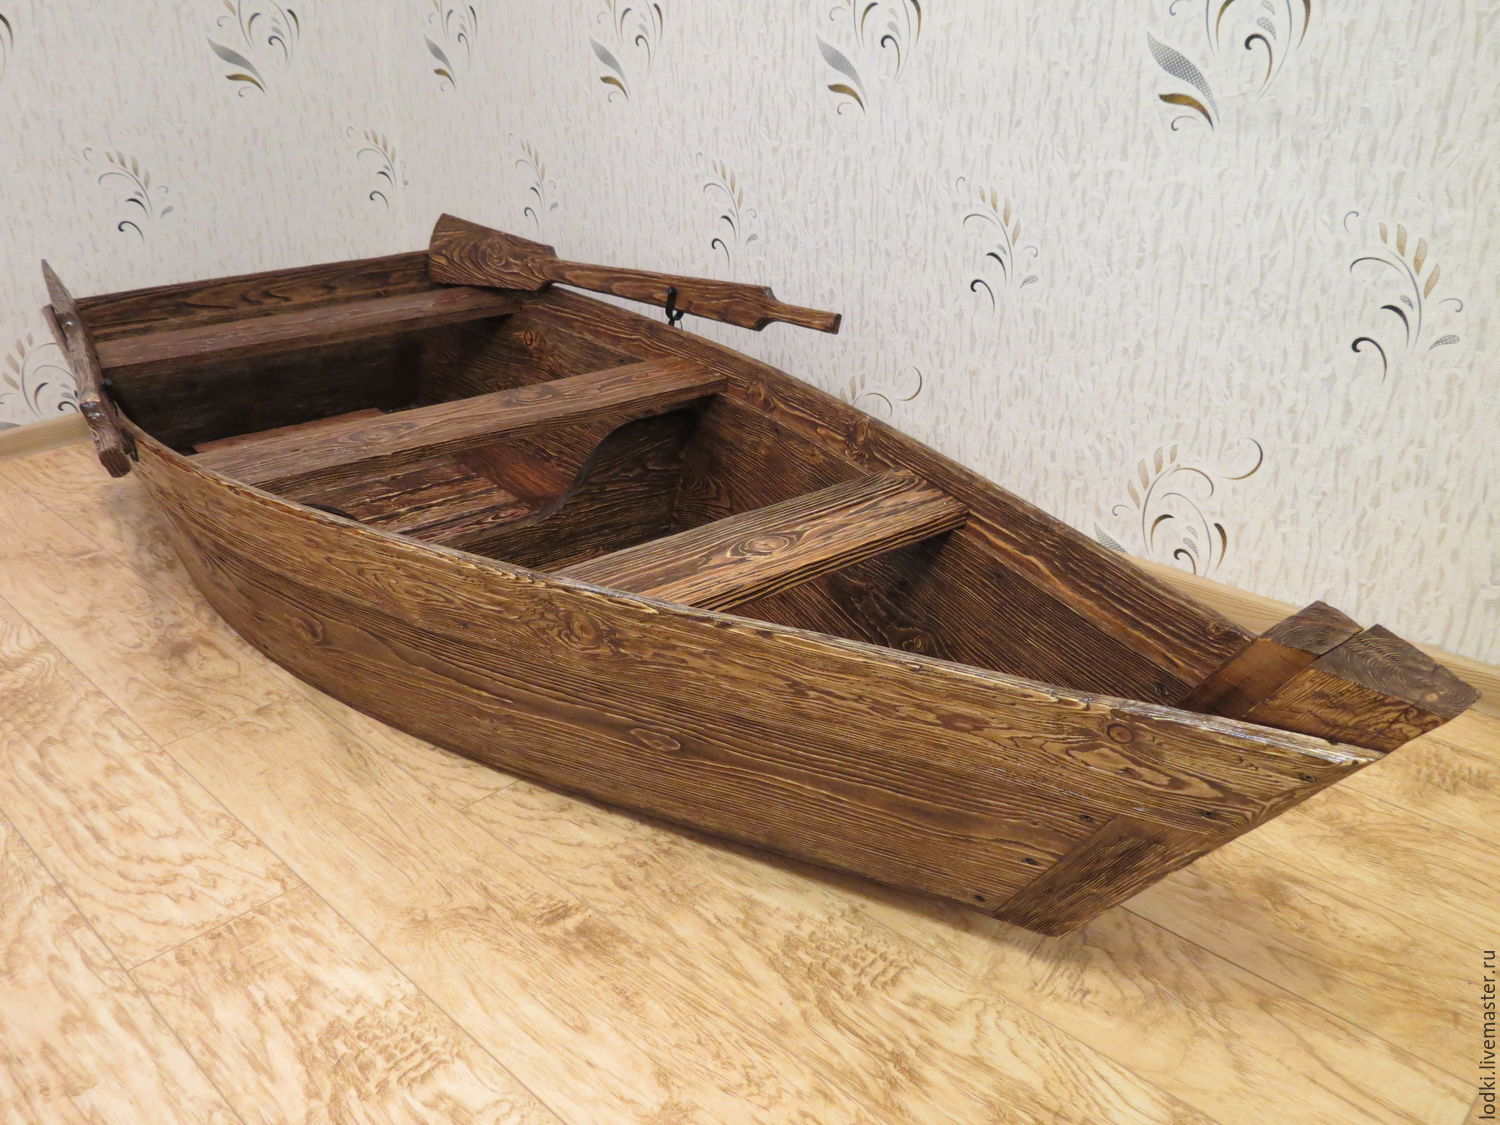 Строительство деревянных лодок. 23 лодки которые можно построить